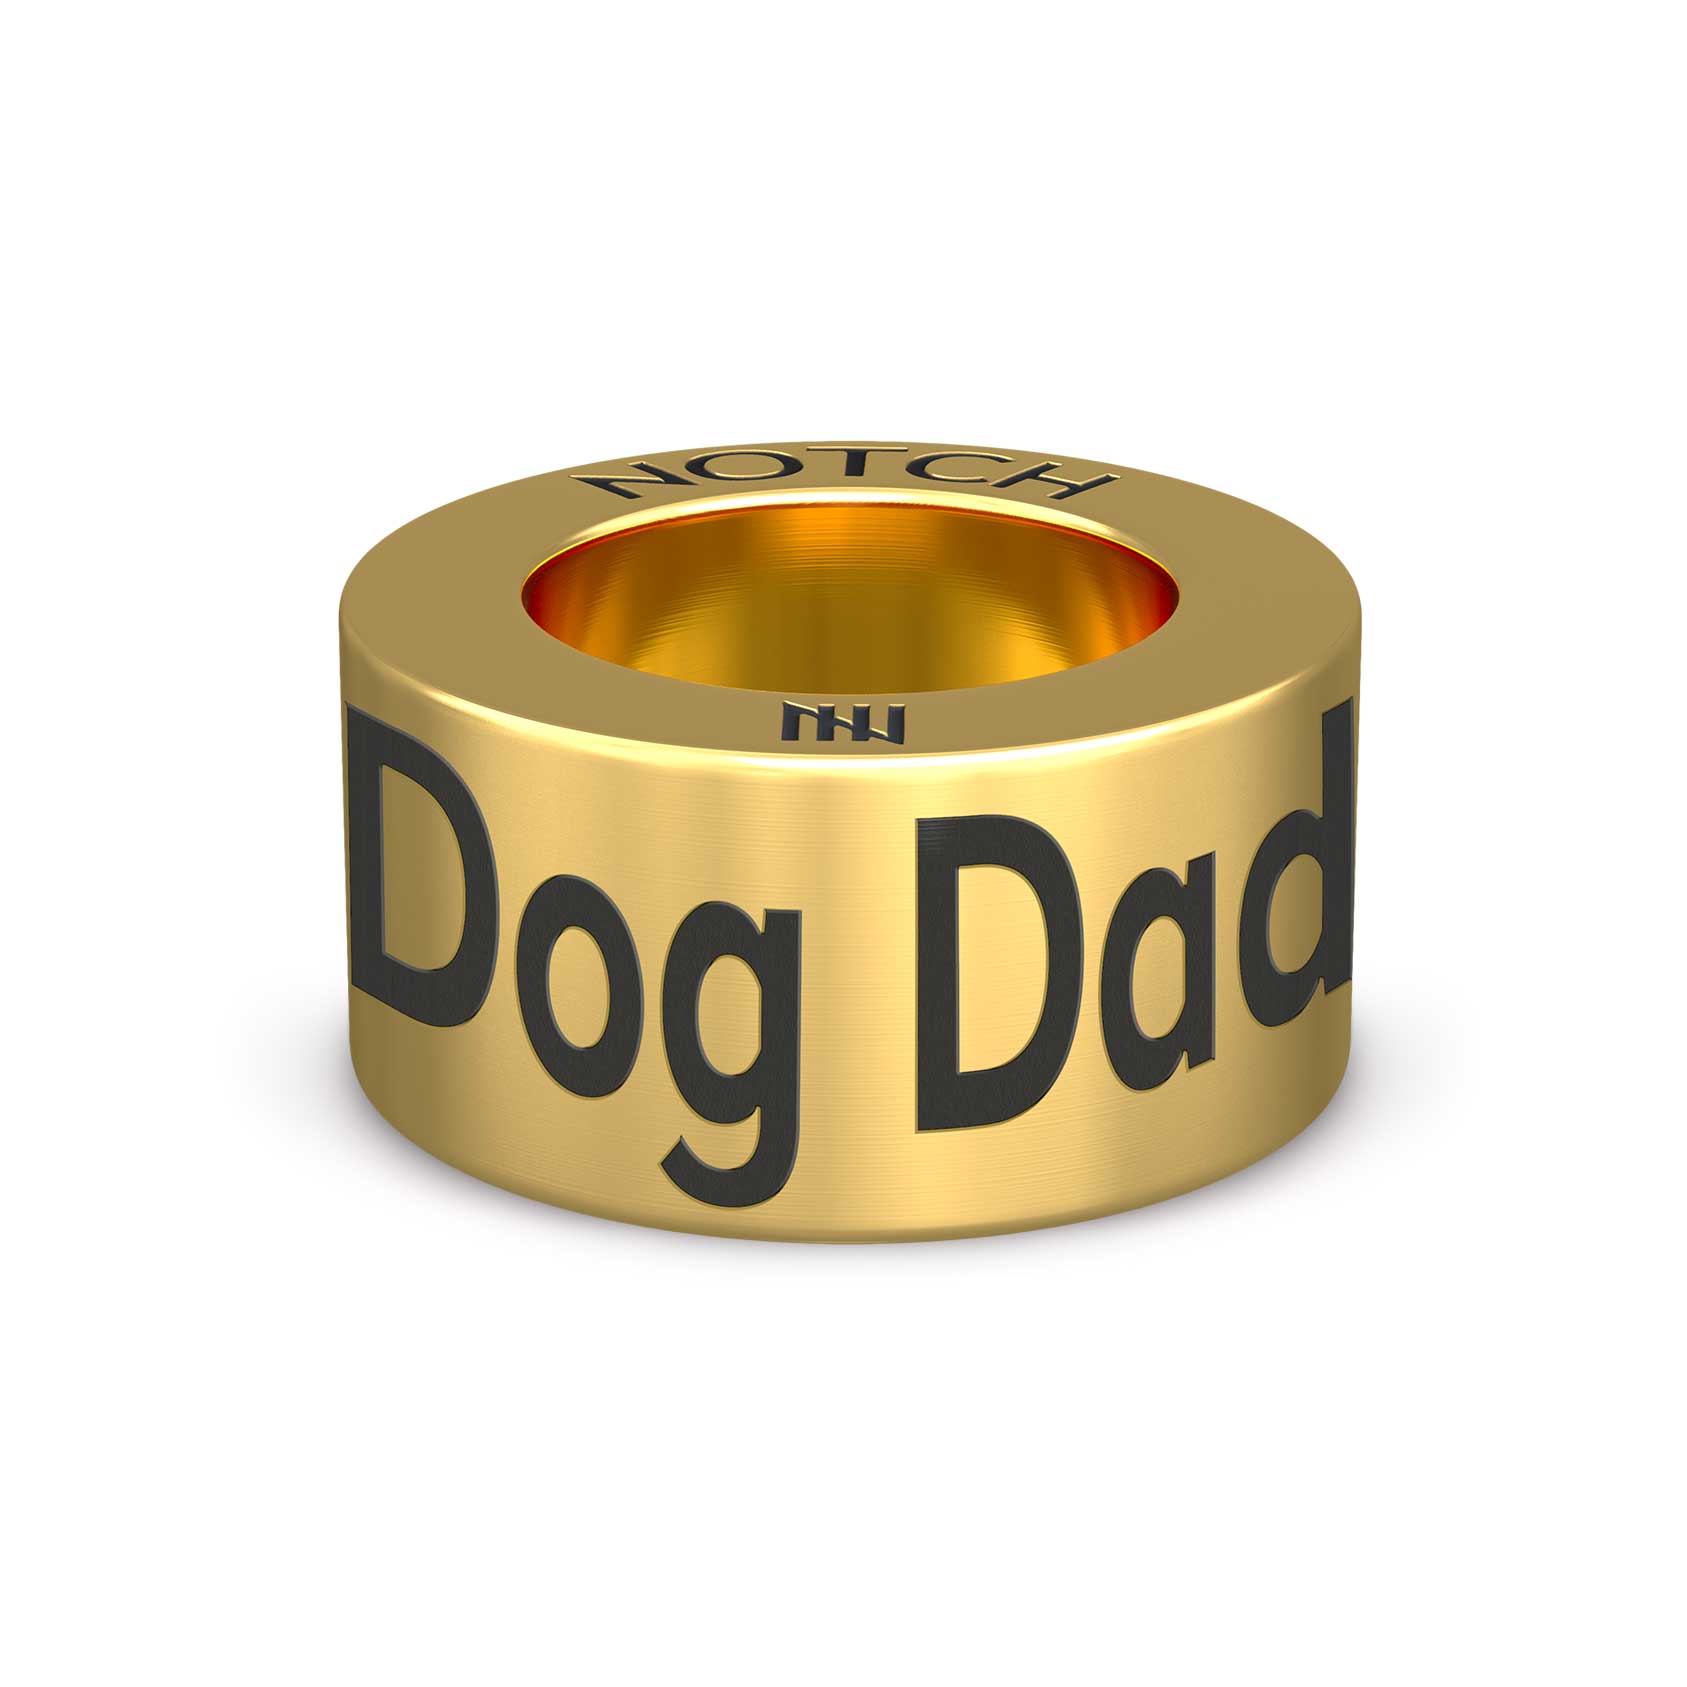 Dog Dad NOTCH Charm